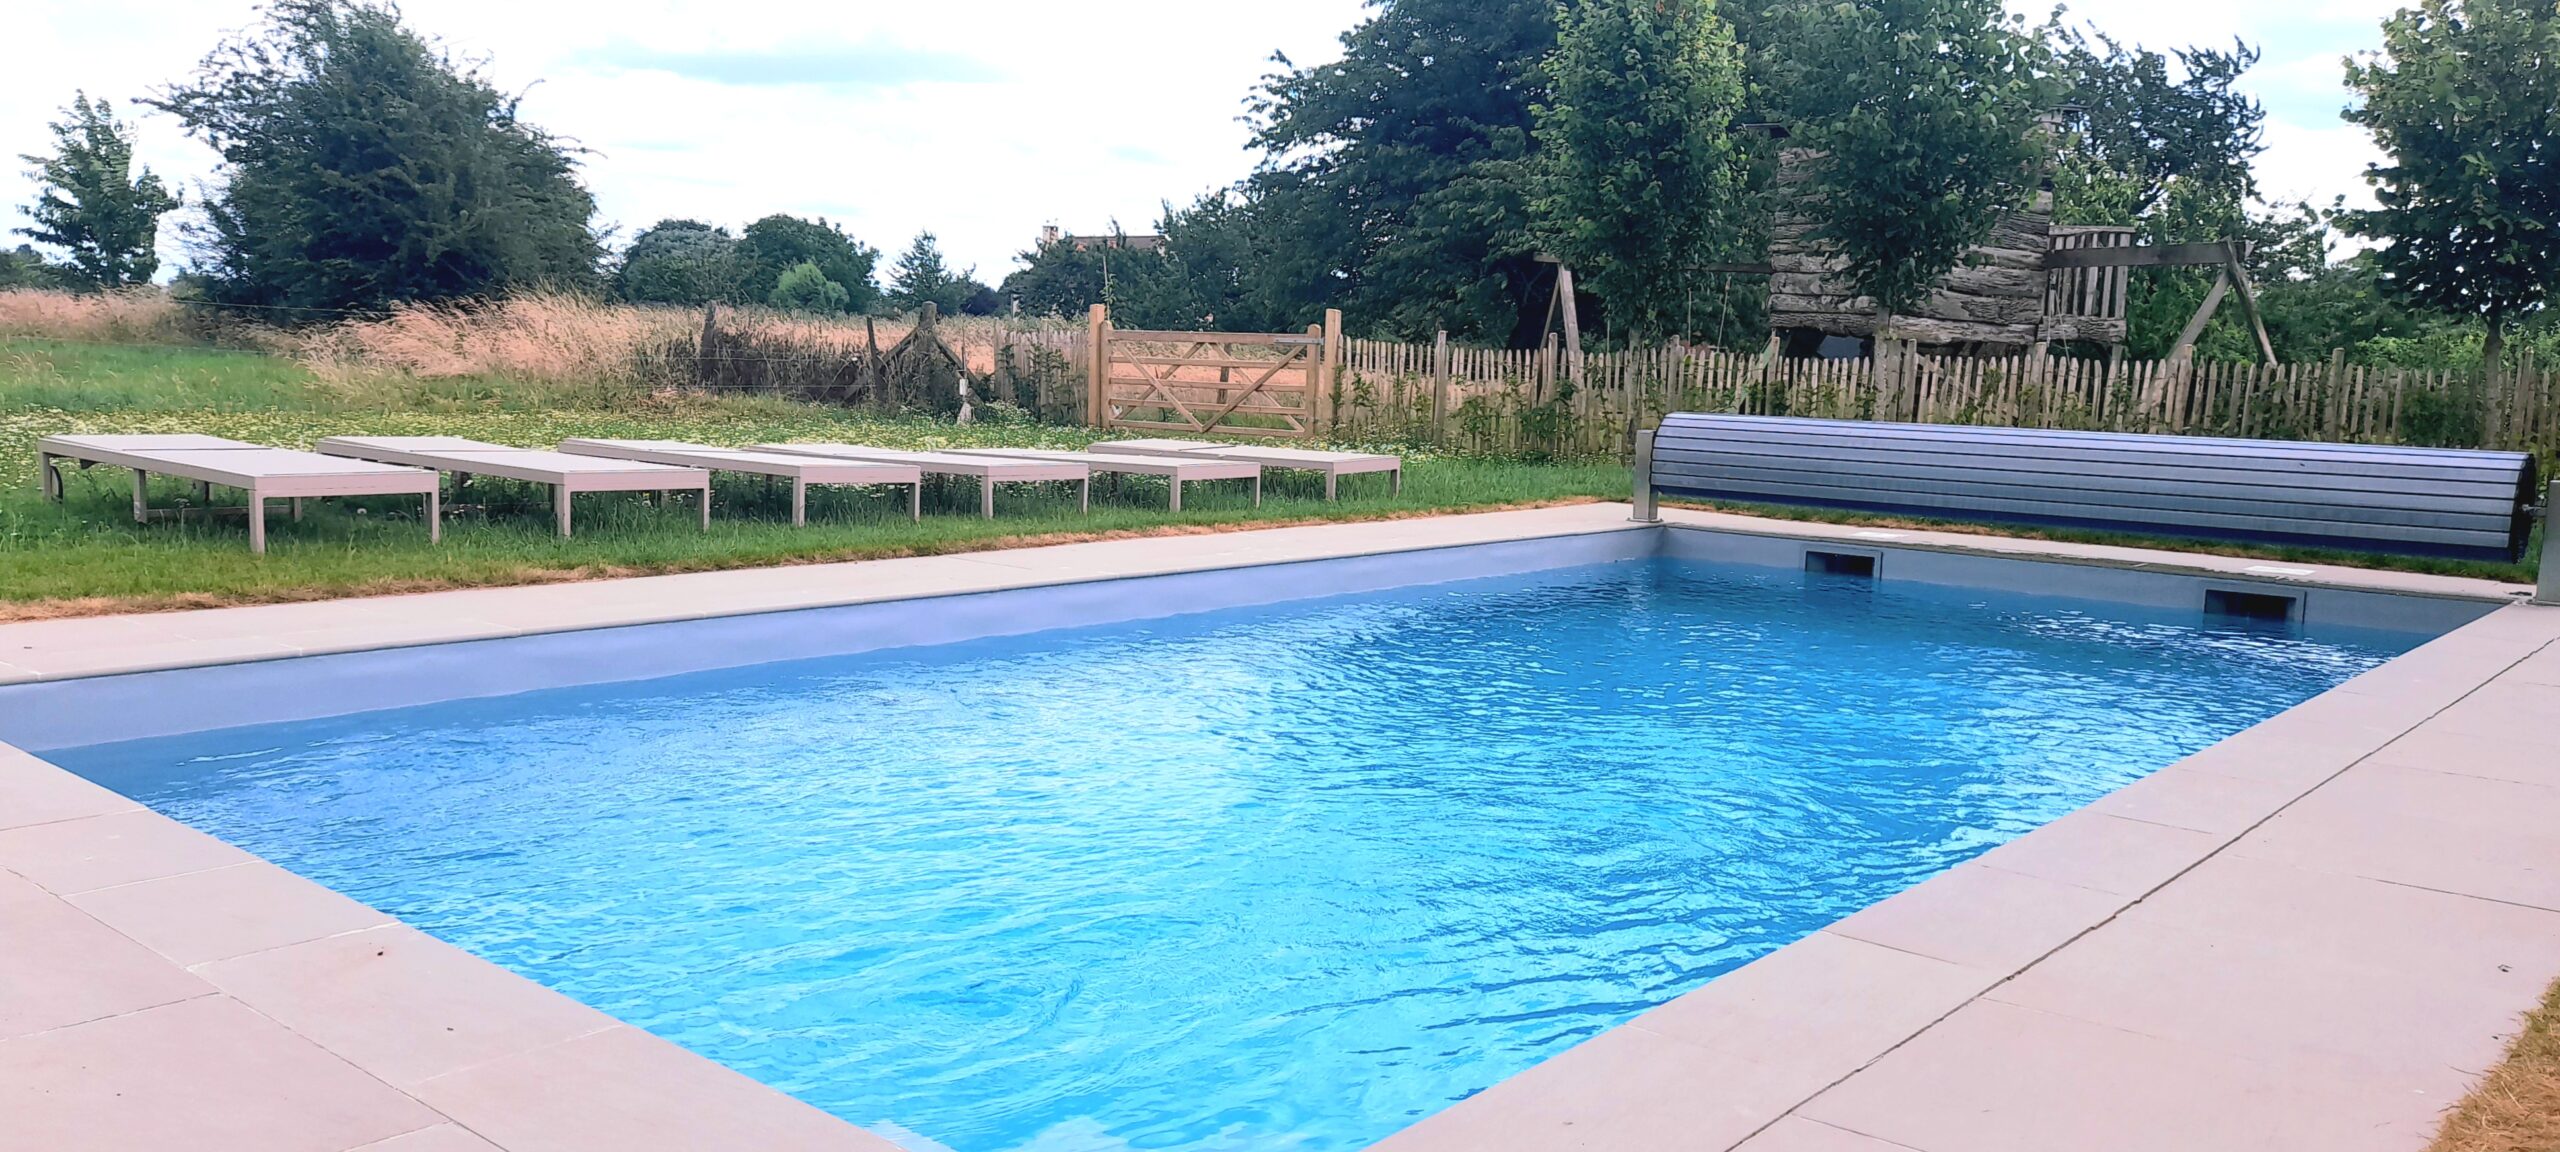 Gites et maisons de vacances à louer à Chaumont-Gistoux La piscine de la Cense de Baudecet 